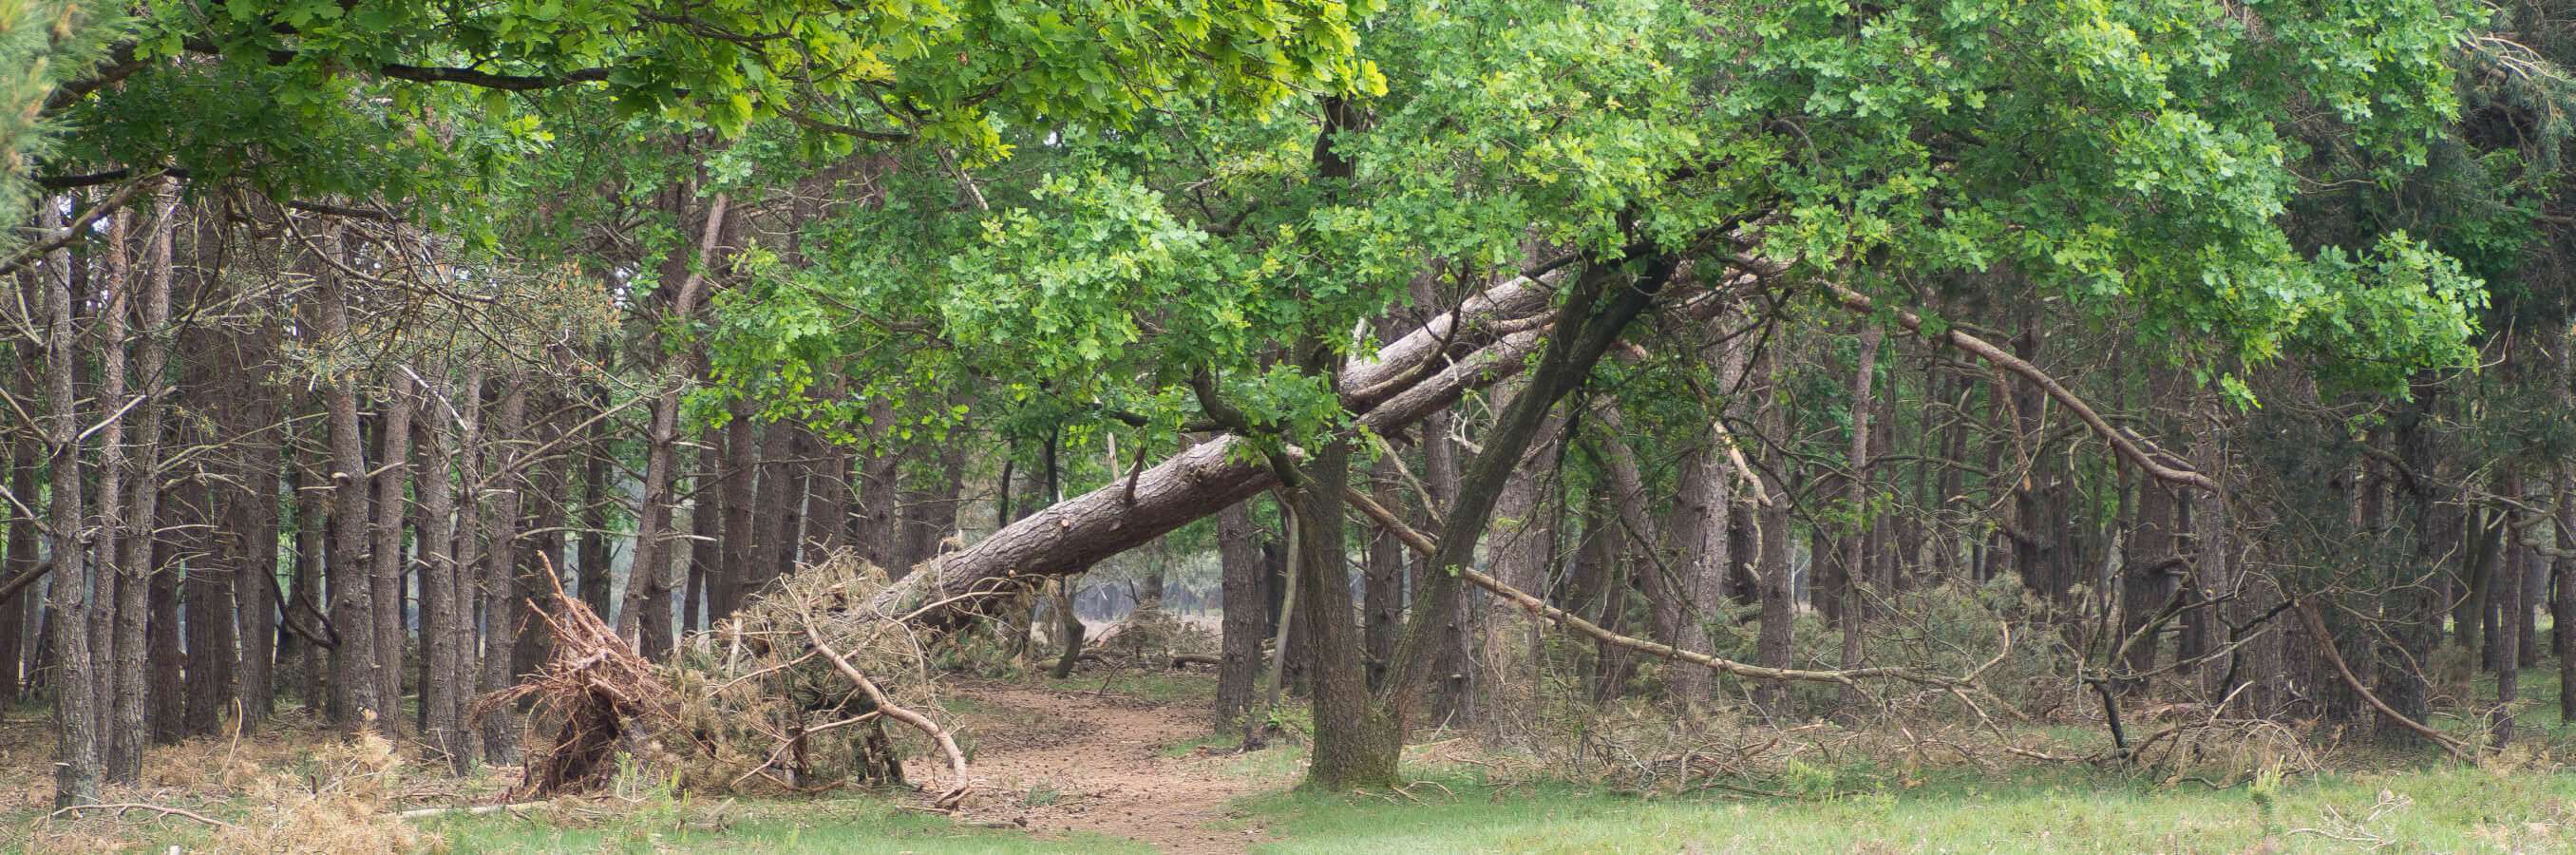 Bussum heide omgevallen boom nabij locatie mindfulness training